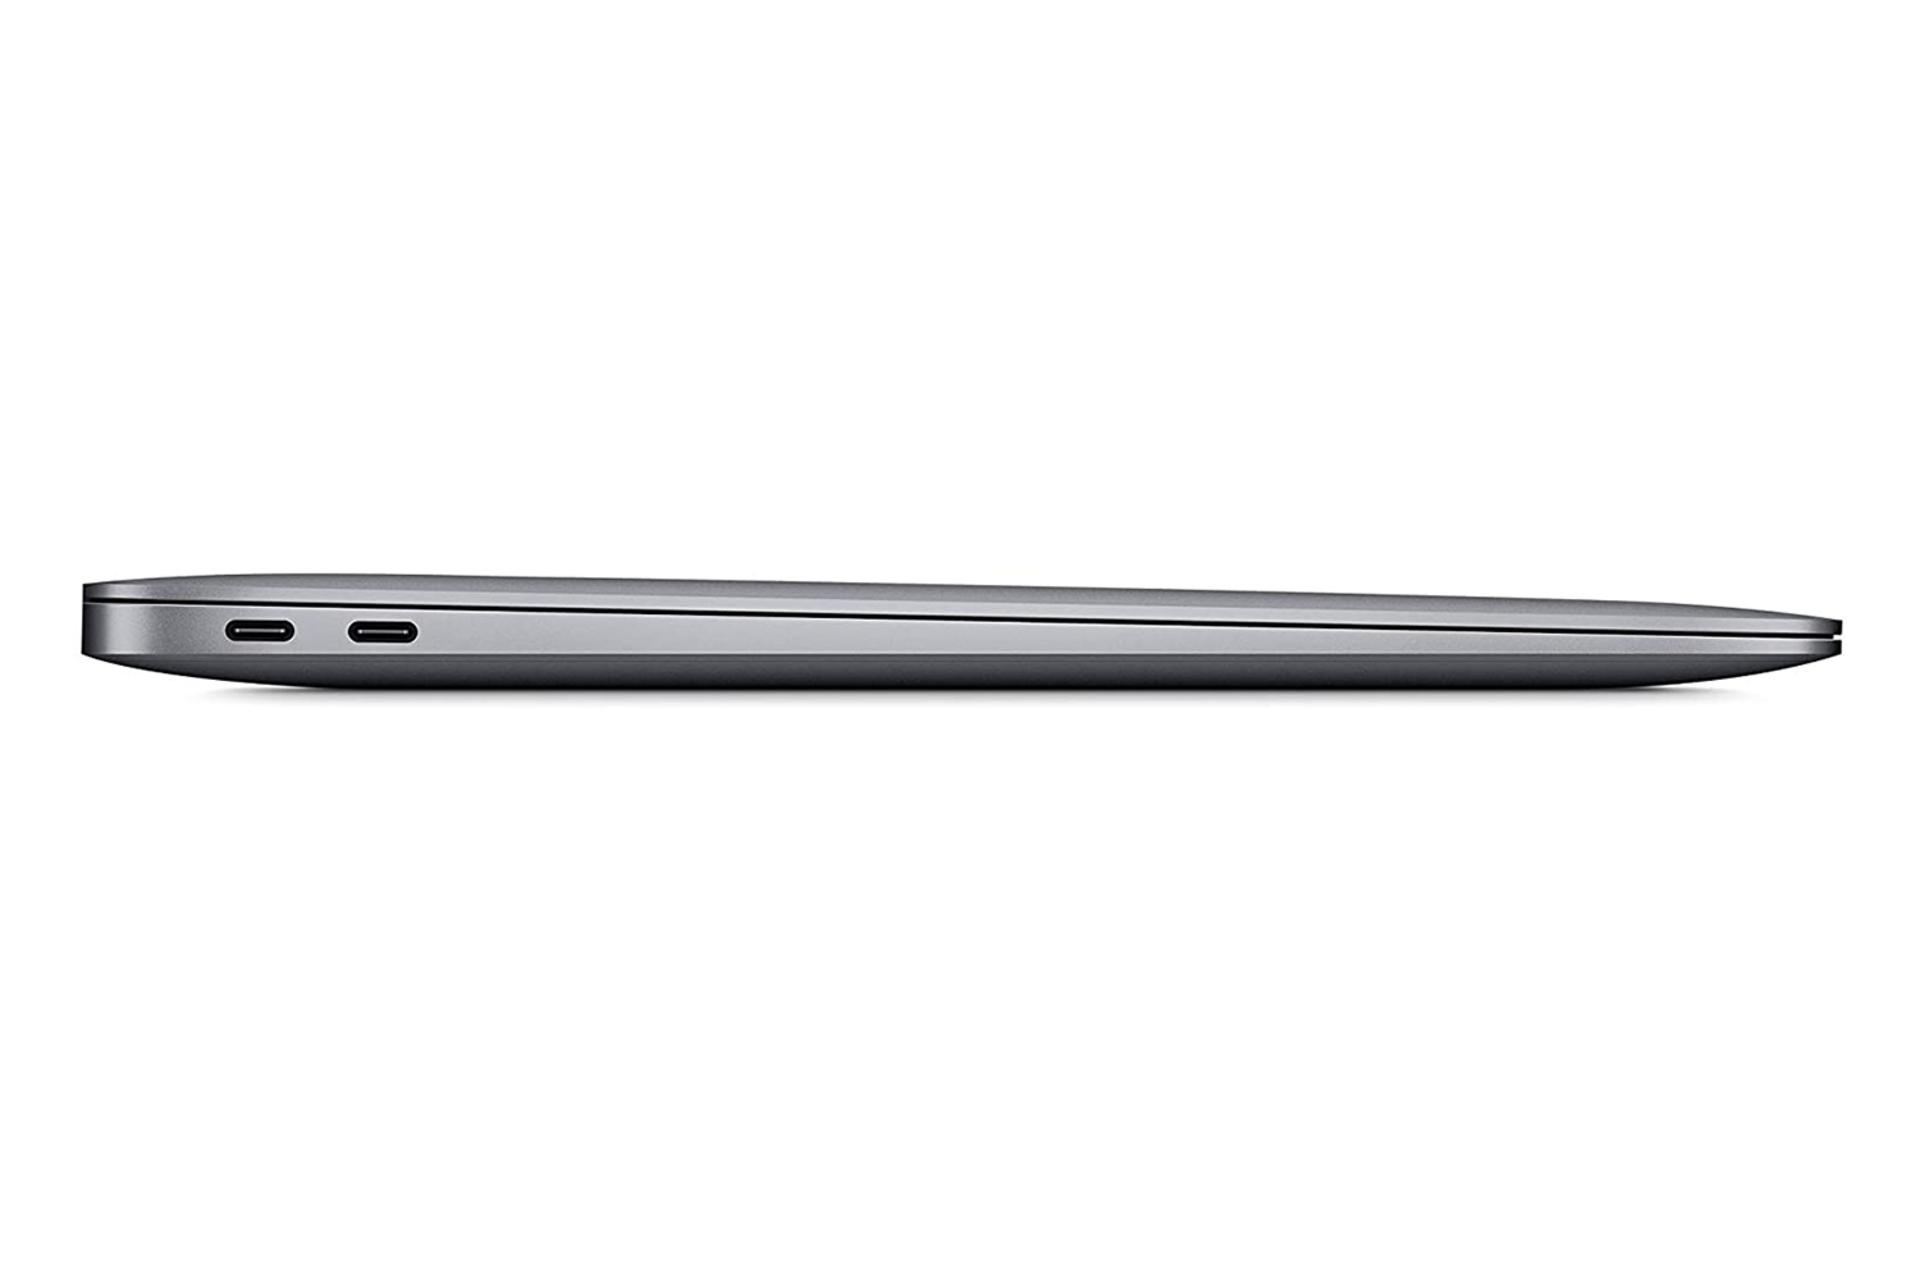 مرجع متخصصين ايران لپ تاپ مك بوك اير 13 اينچي 2020 اپل / Apple MacBook Air 13 2020 / پورت ها